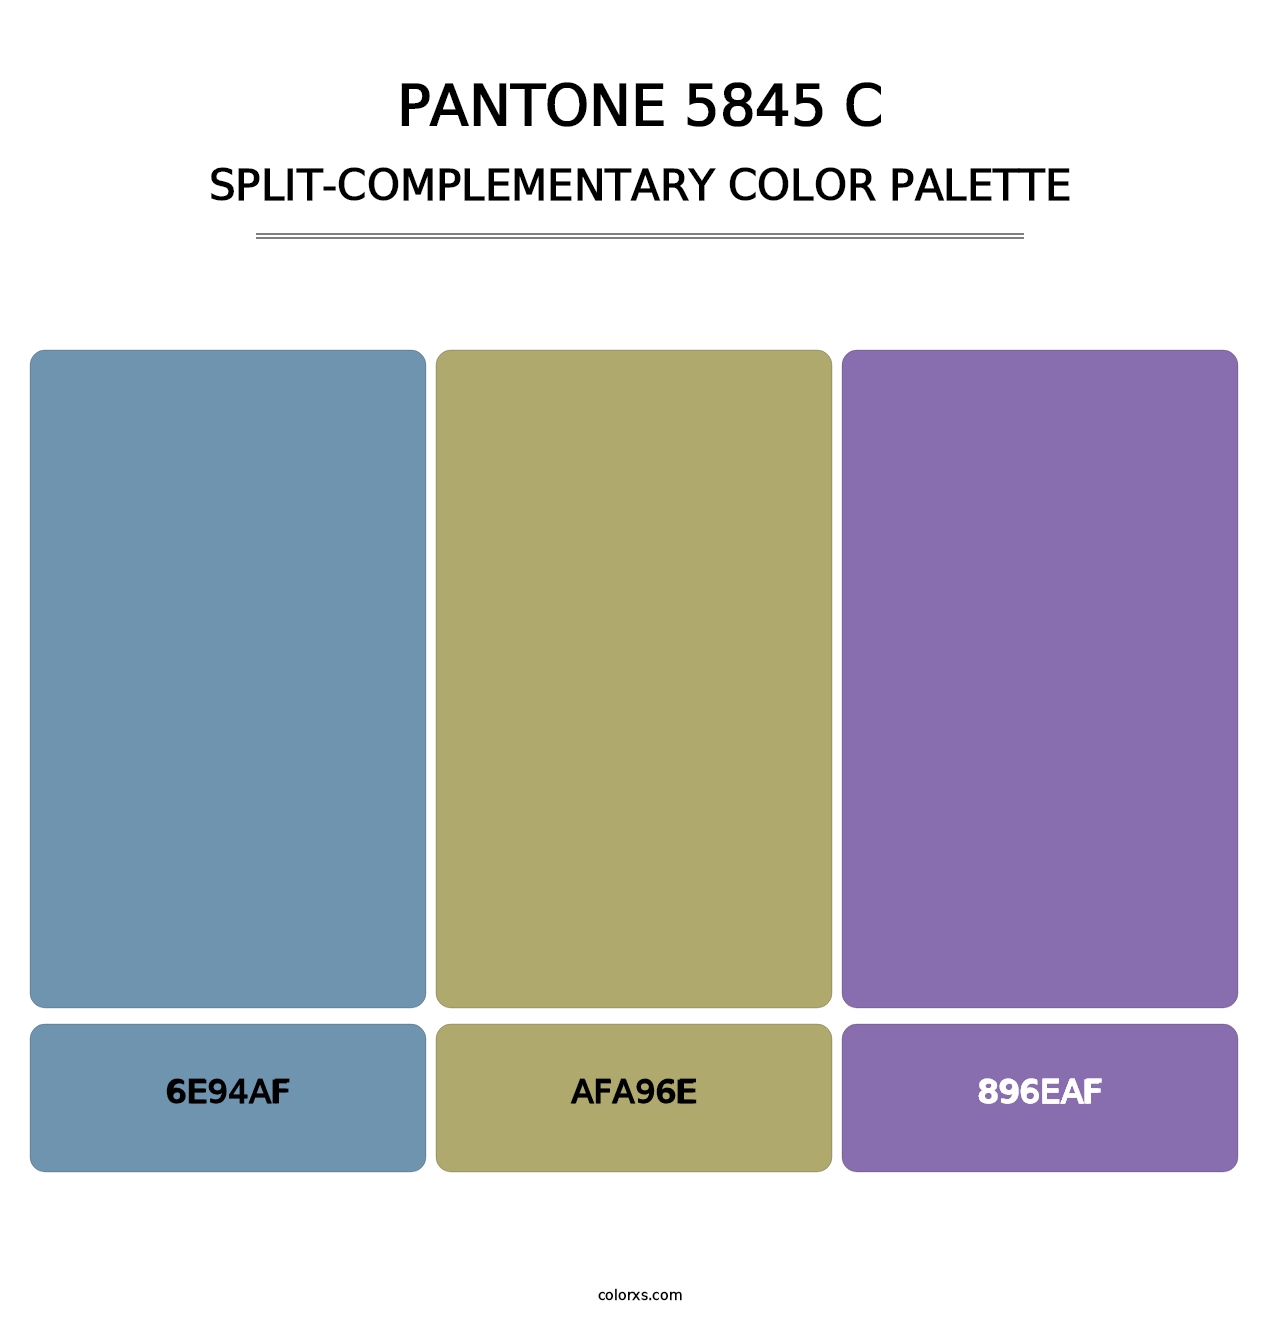 PANTONE 5845 C - Split-Complementary Color Palette